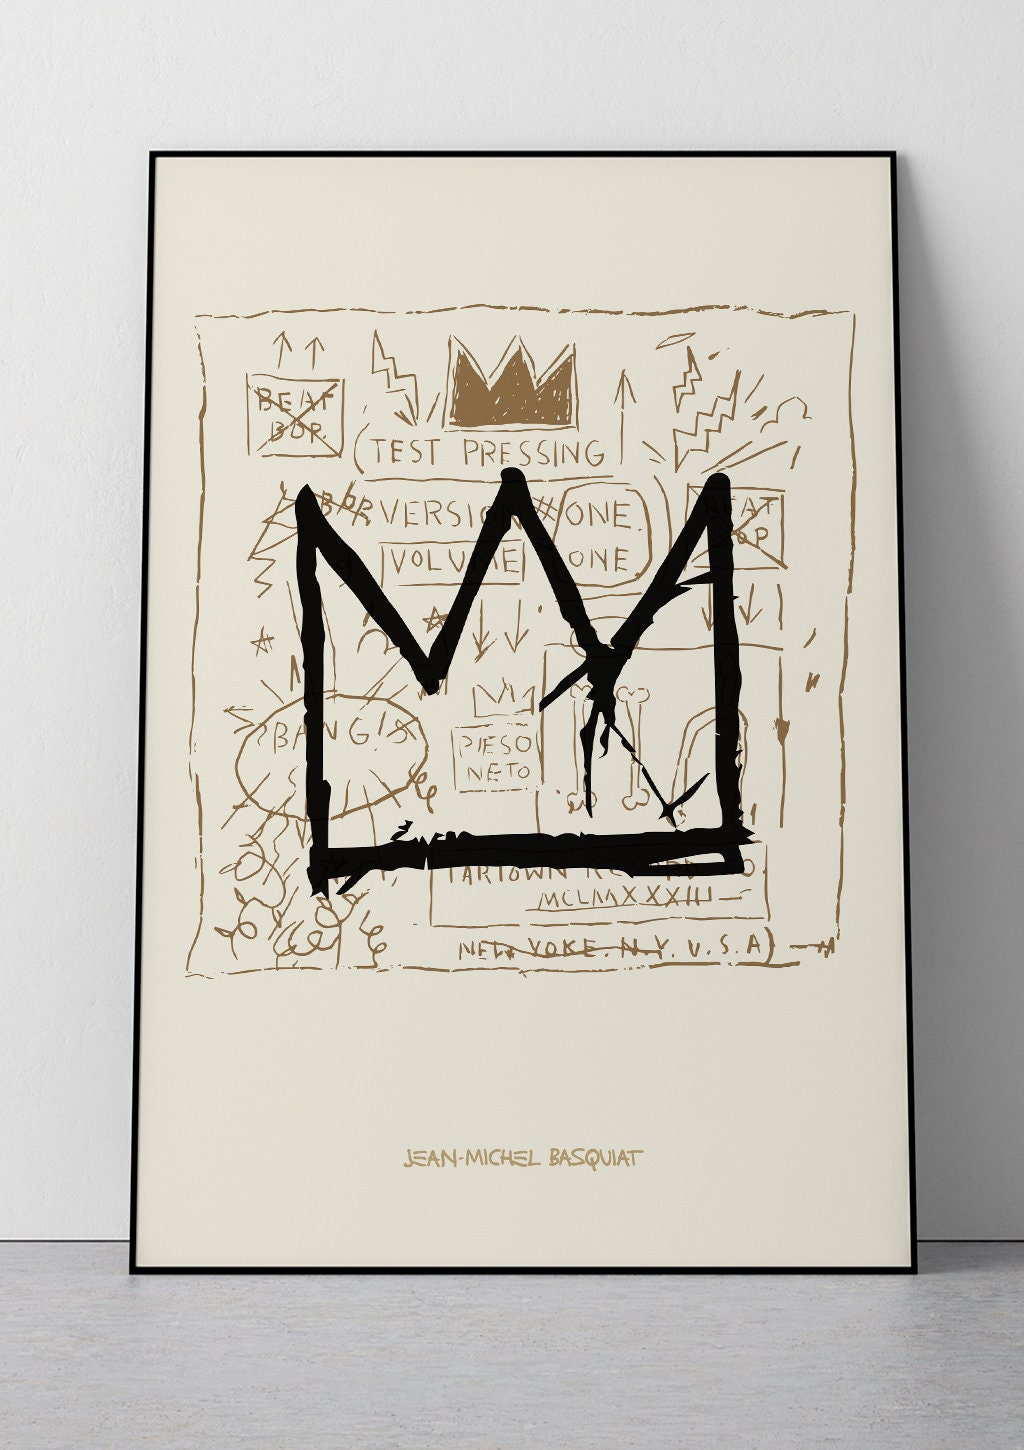 Discover バスキア Bsq ポスター プリント 家 装飾 飾り 壁掛け 部屋 アート グラフィティ アート Vintage Michel Basquiats Art Print